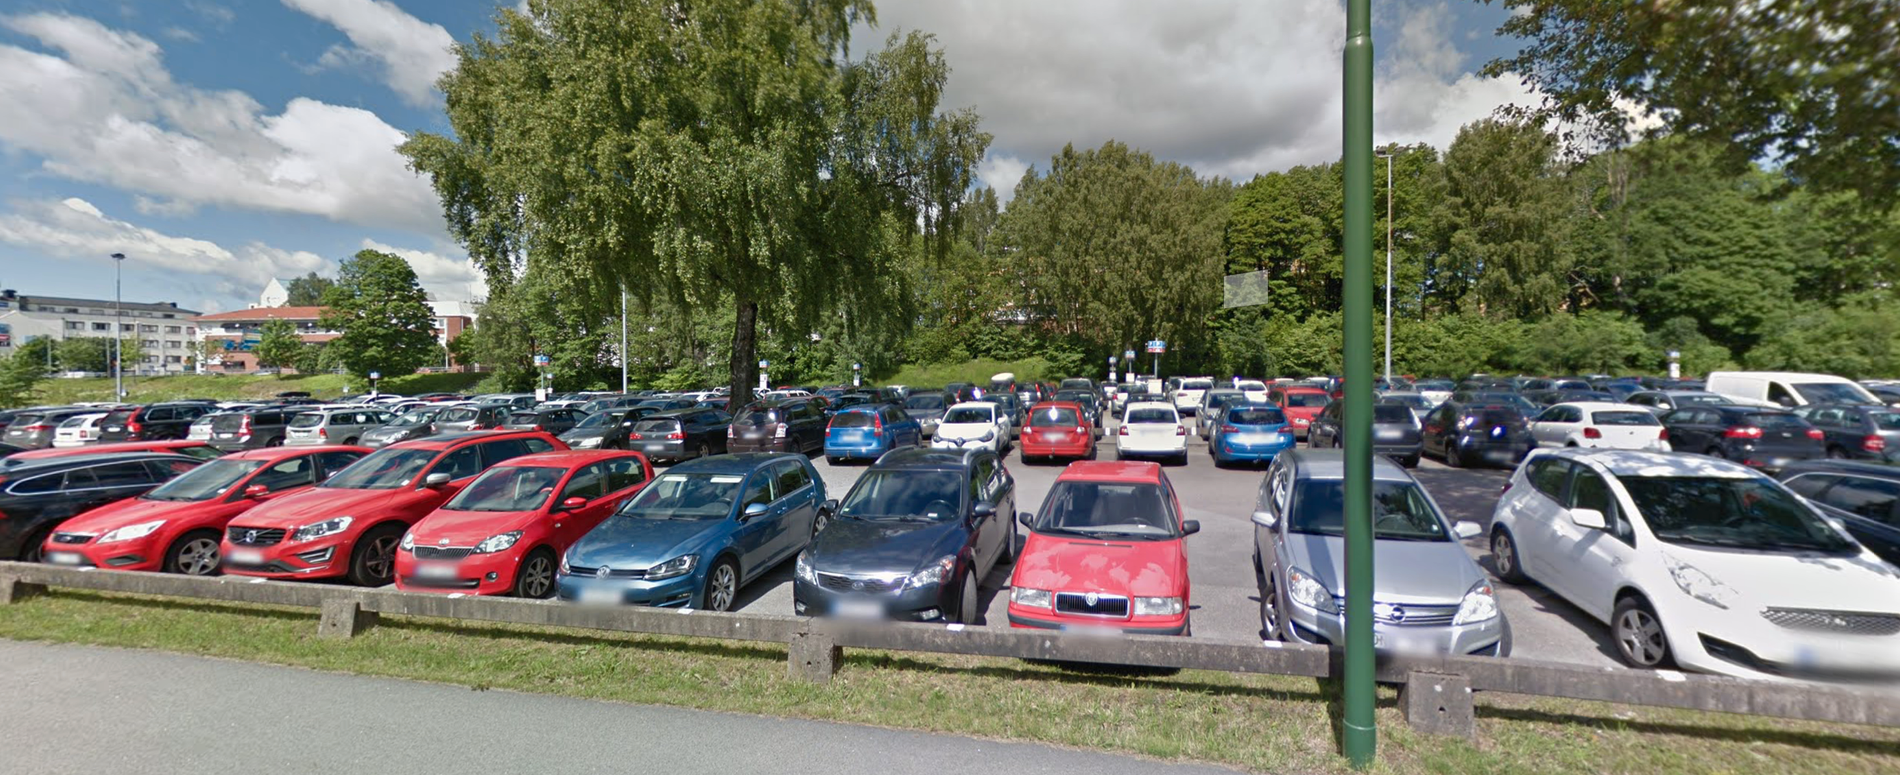 Parkeringsplatsen Gjutaren i Borås.